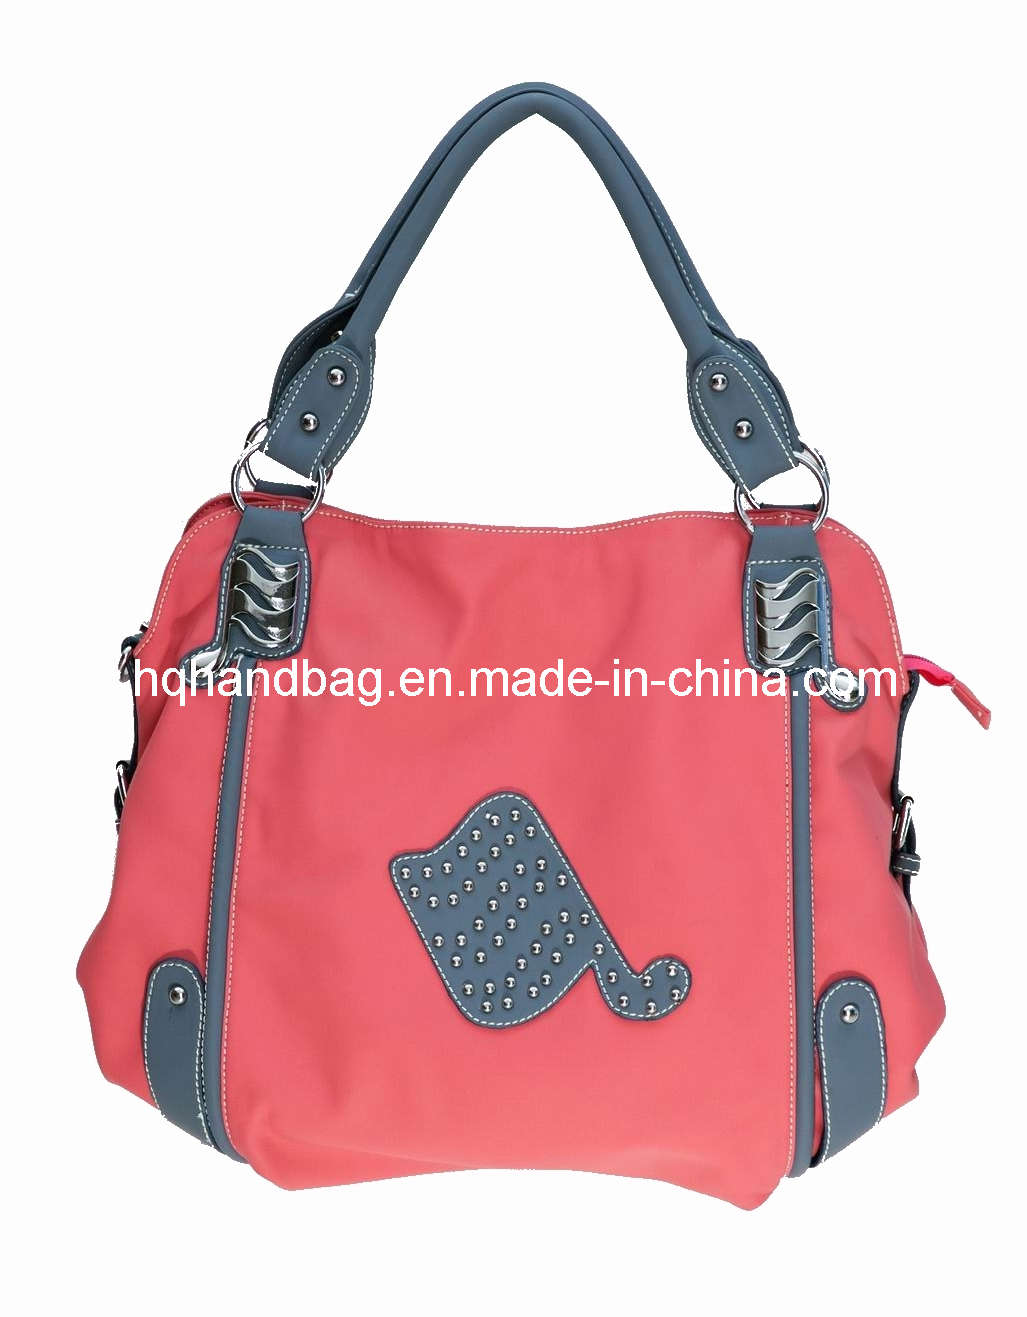 Red PU Ladies' Fashion Handbag (HQ-M019)